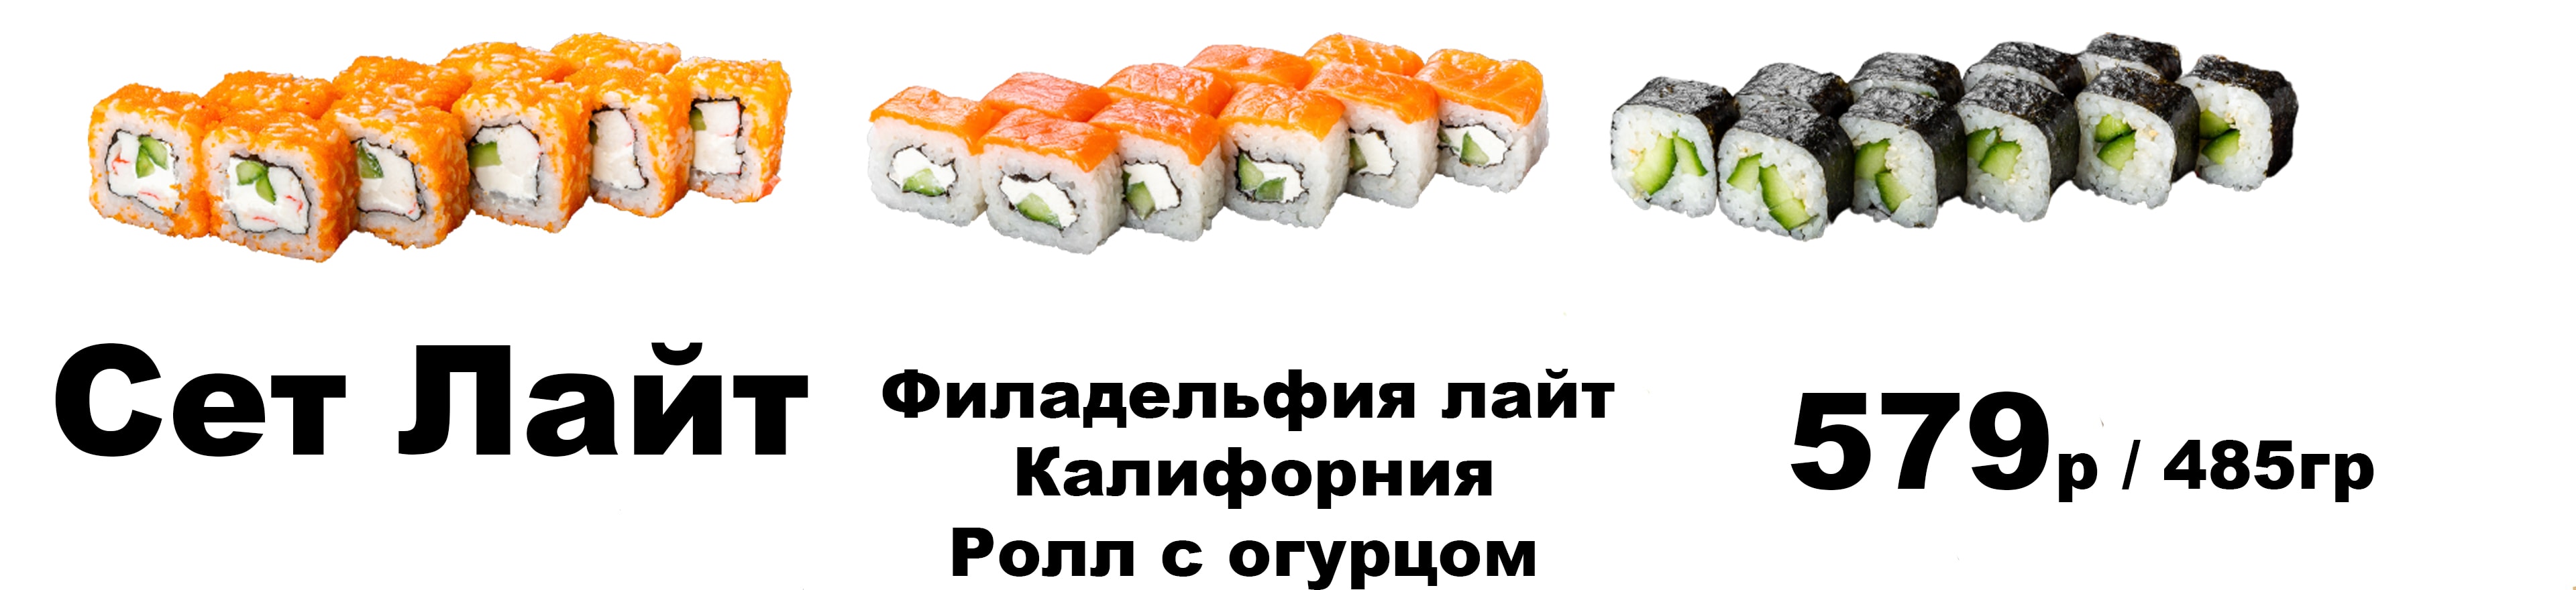 Заказать суши в якутске с доставкой на дом недорого фото 66